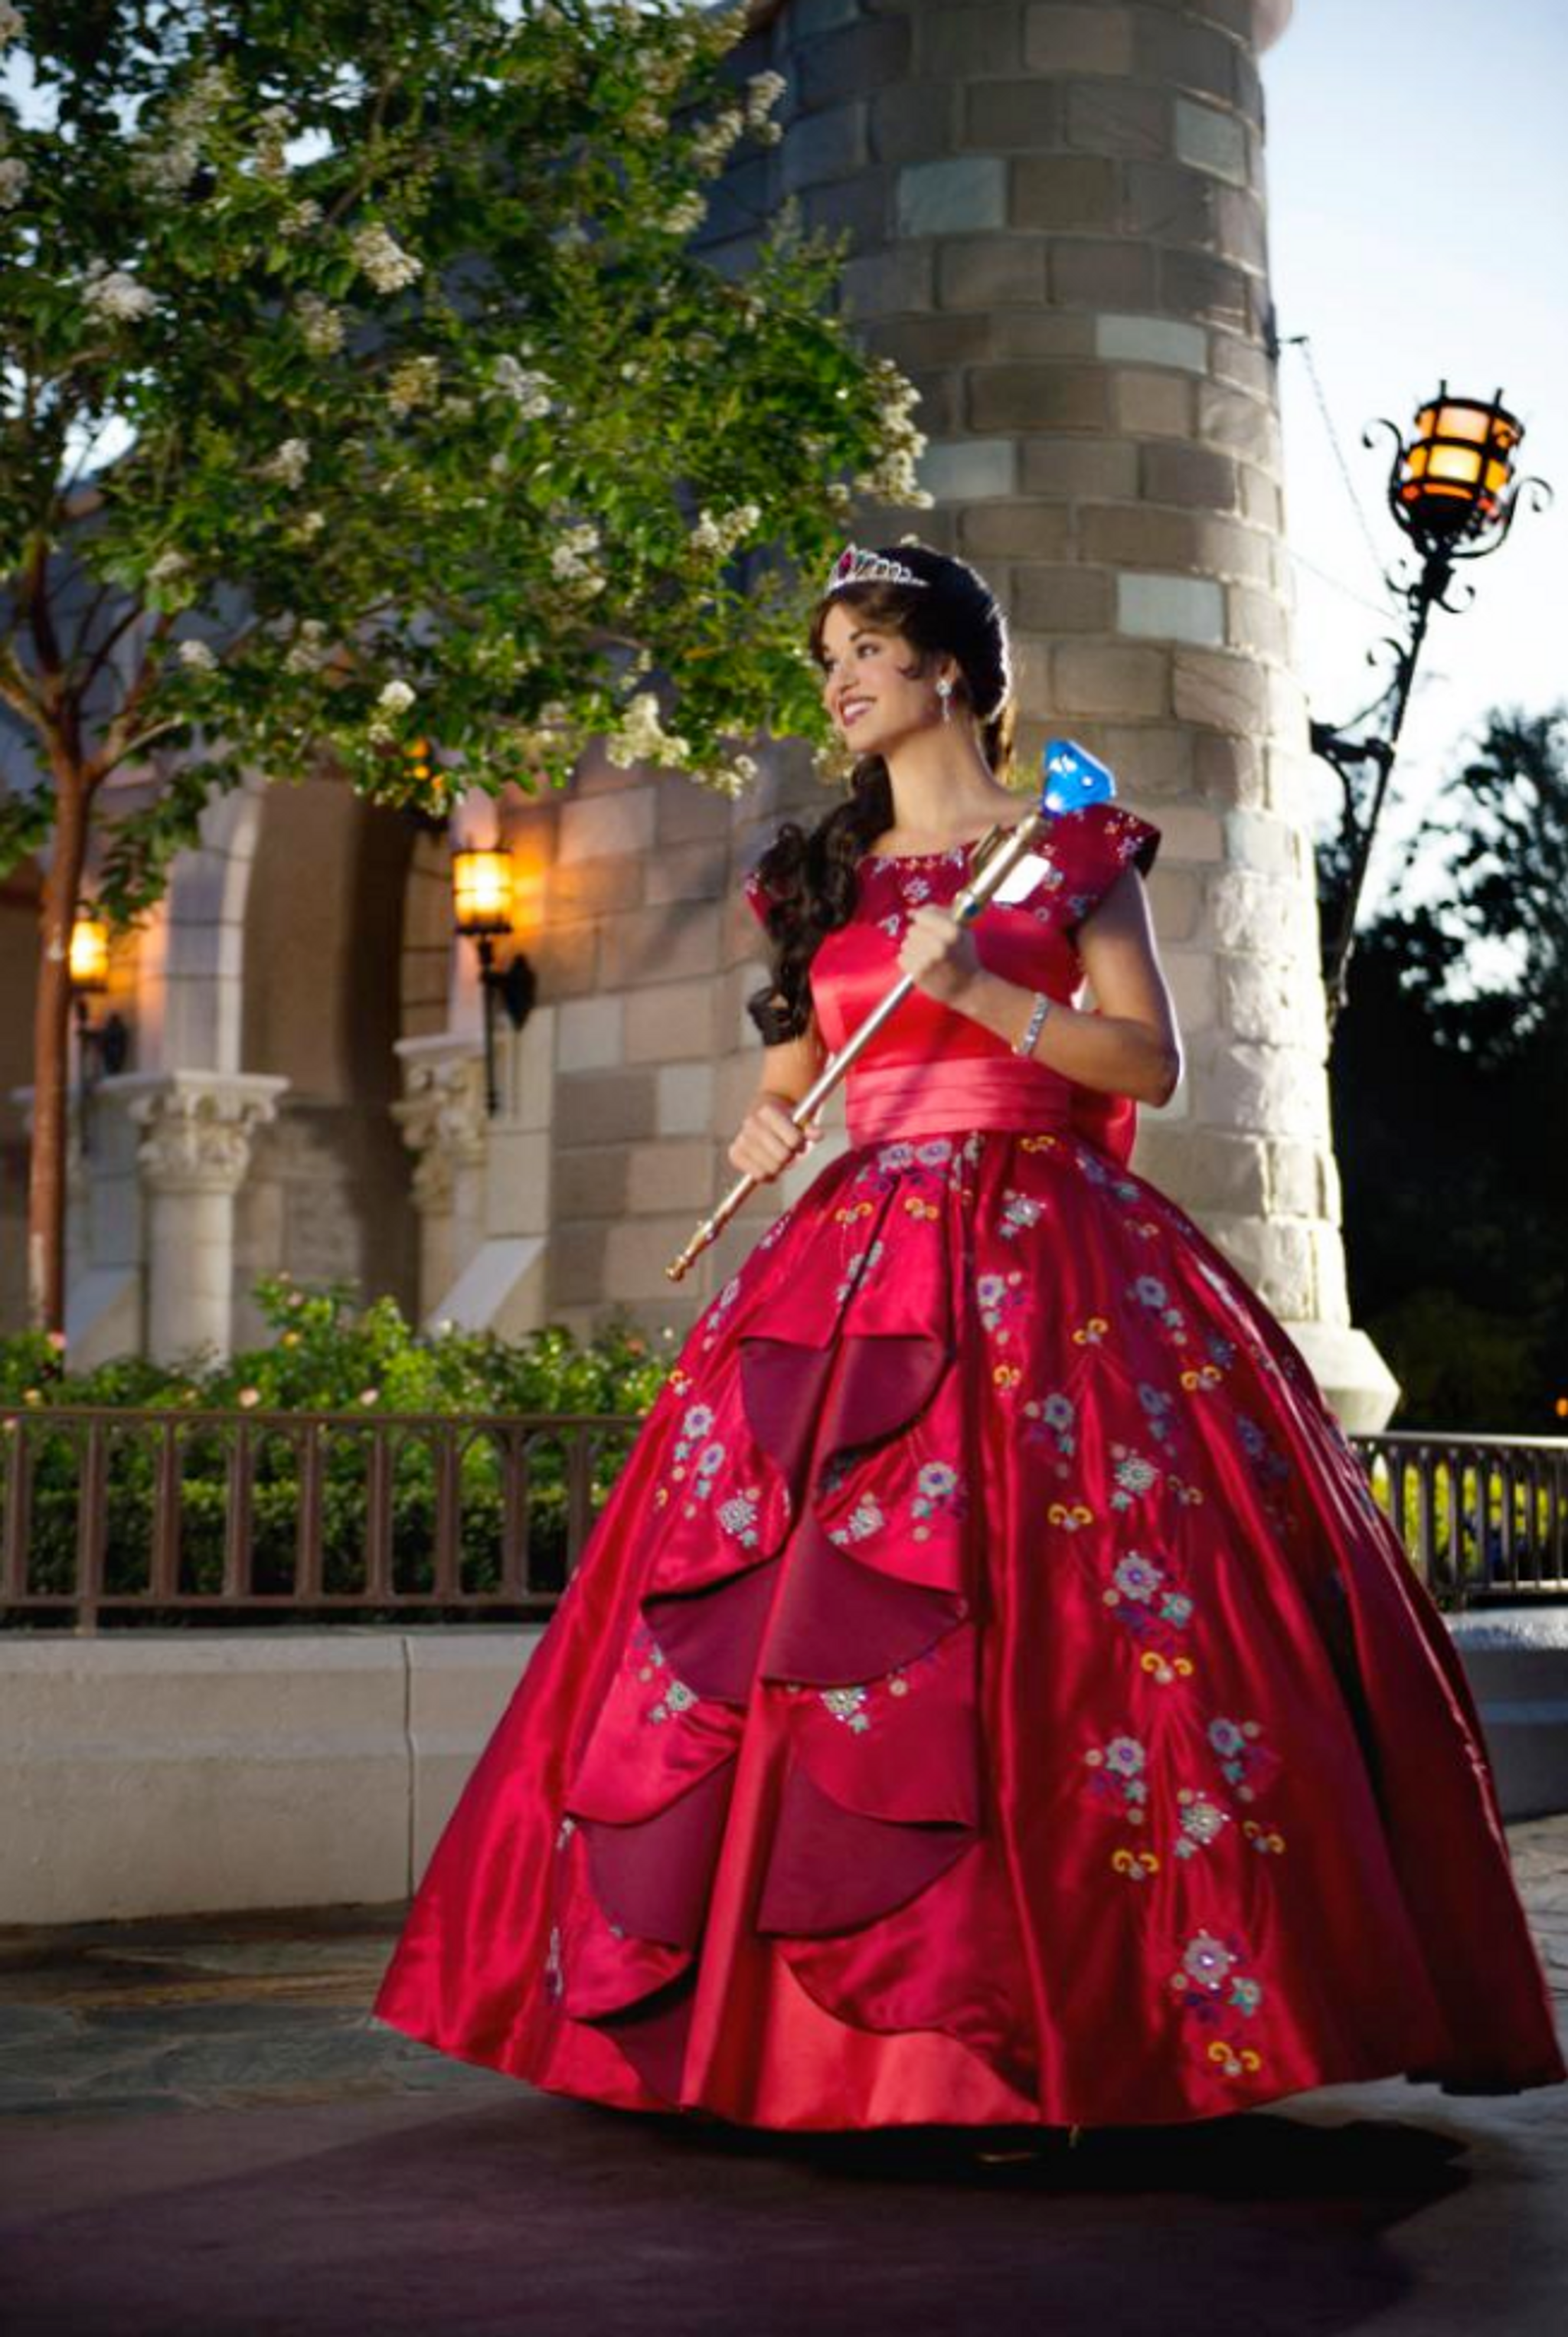 Disney has introduced a Latina princess